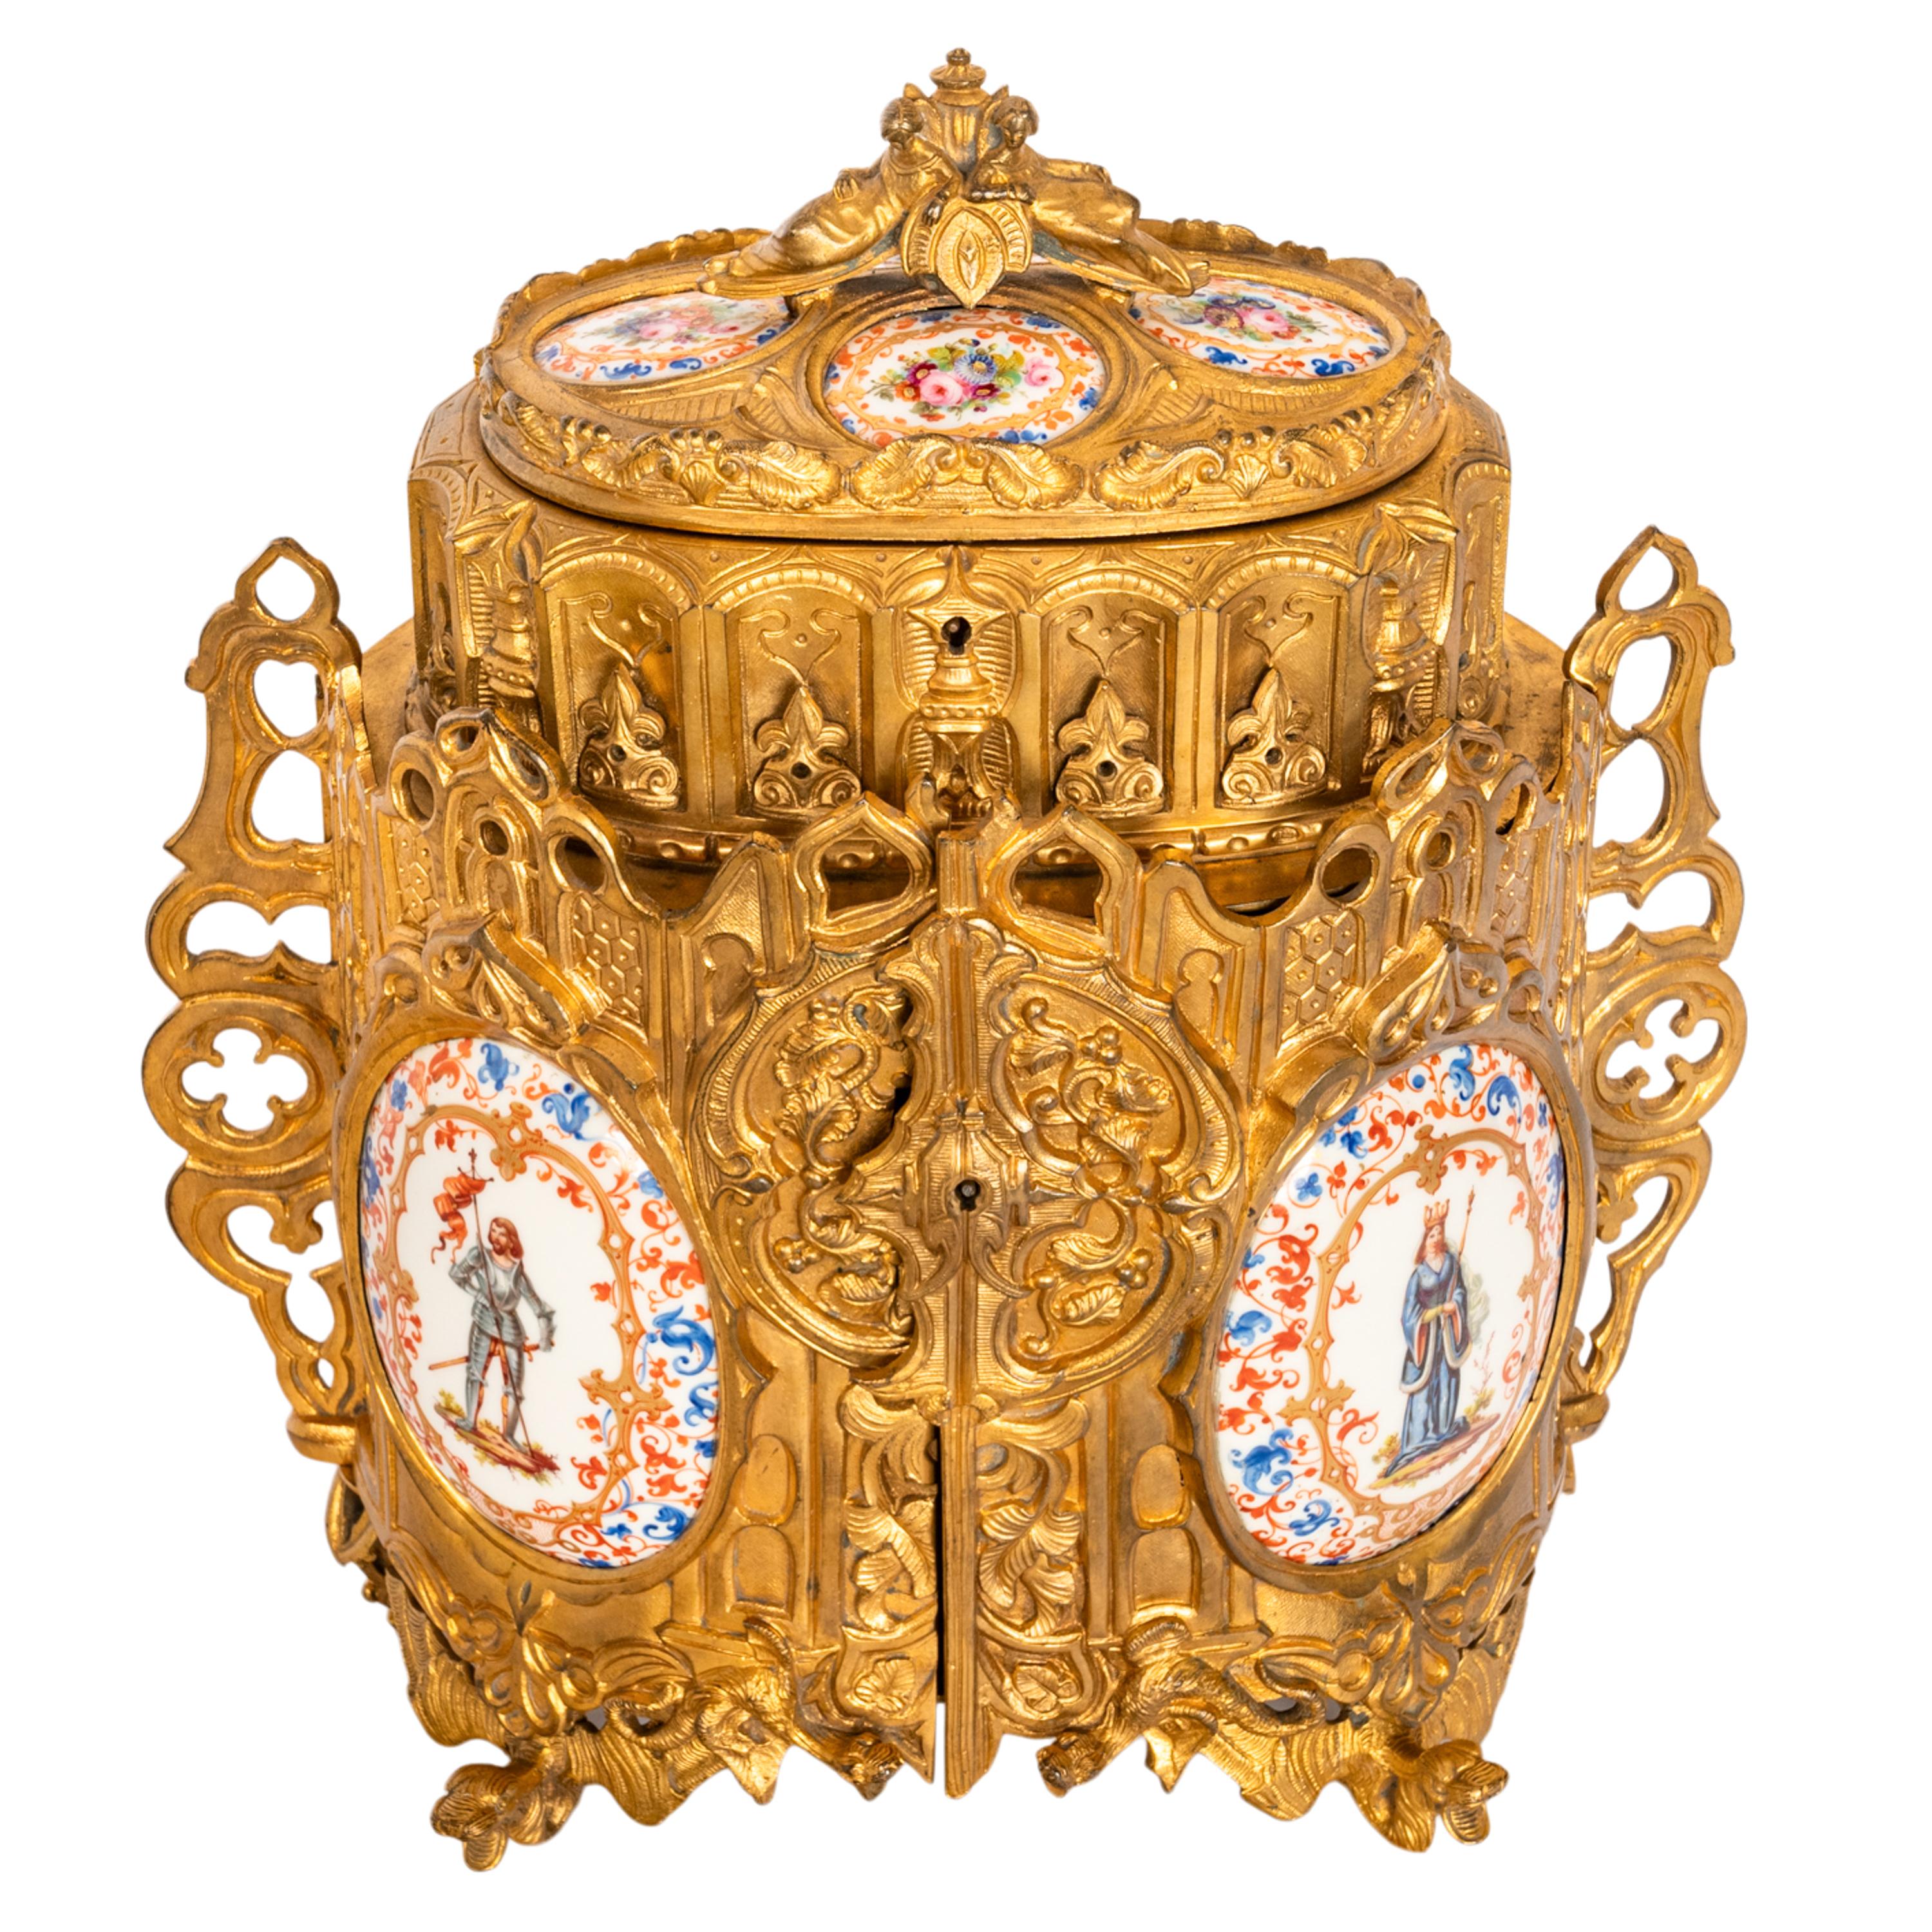 Coffret à bijoux en bronze doré de style néo-gothique/médiéval, avec panneaux en porcelaine, vers 1870.
Un coffret à bijoux identique a été vendu sur 1stdibs sous le numéro de référence LU155624346173, au prix de 6 500 $.
La boîte à bijoux s'inspire